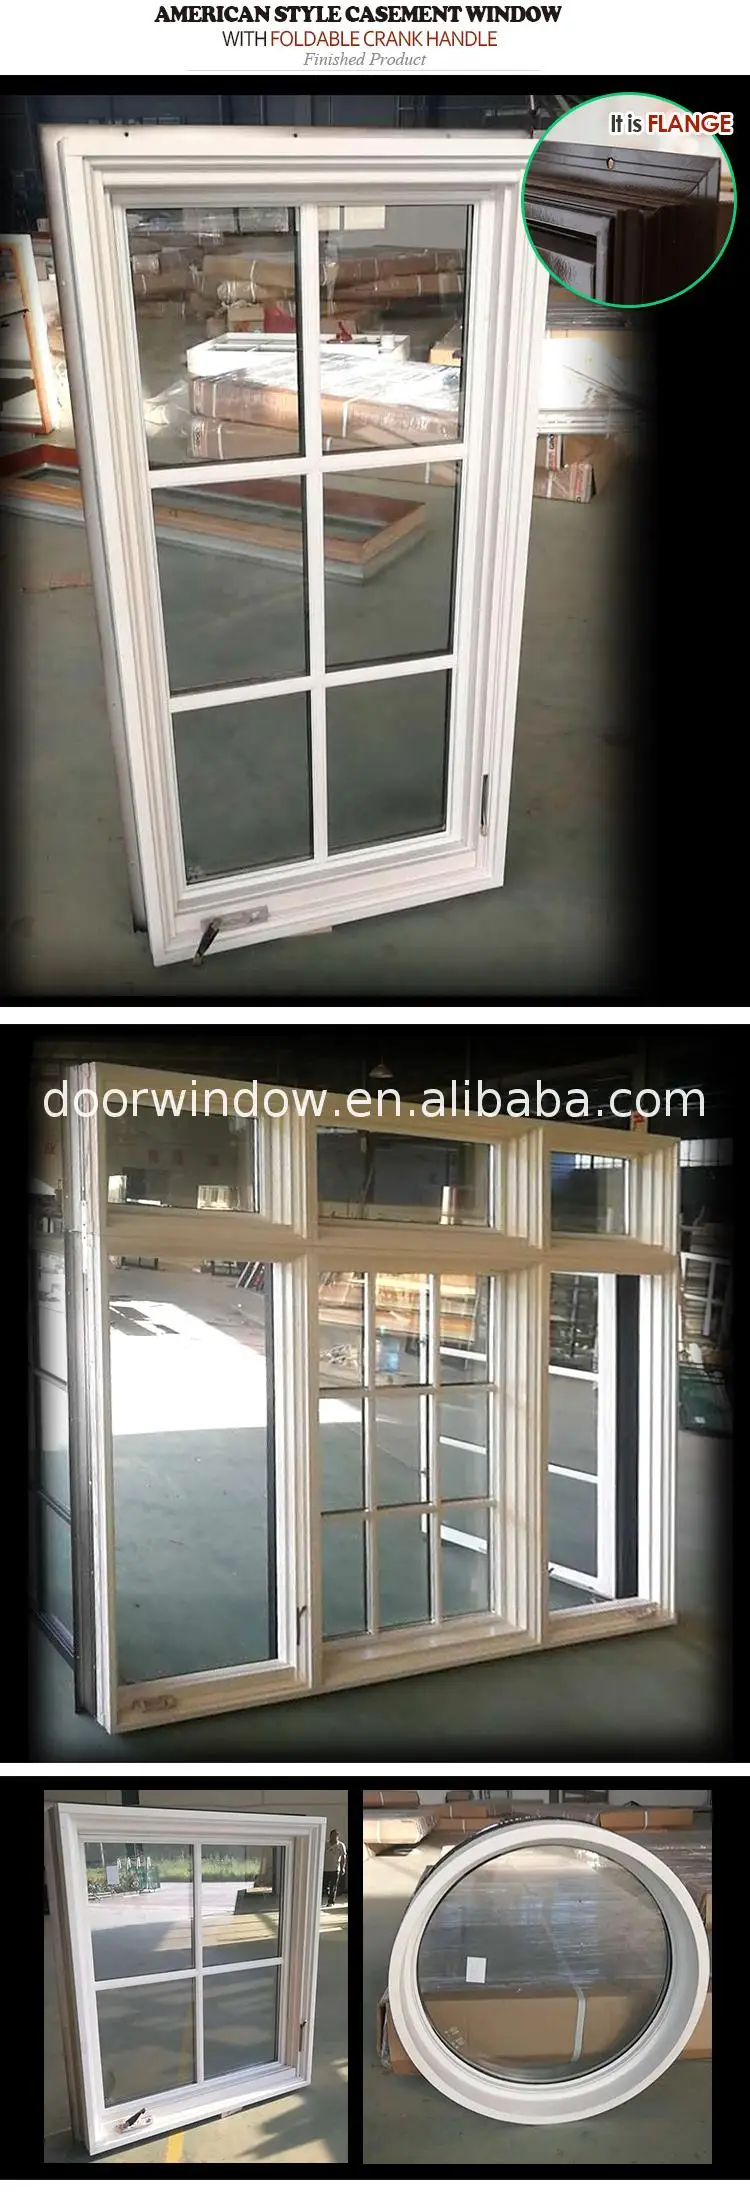 Wood and aluminum window aluminium windows doors with grill design